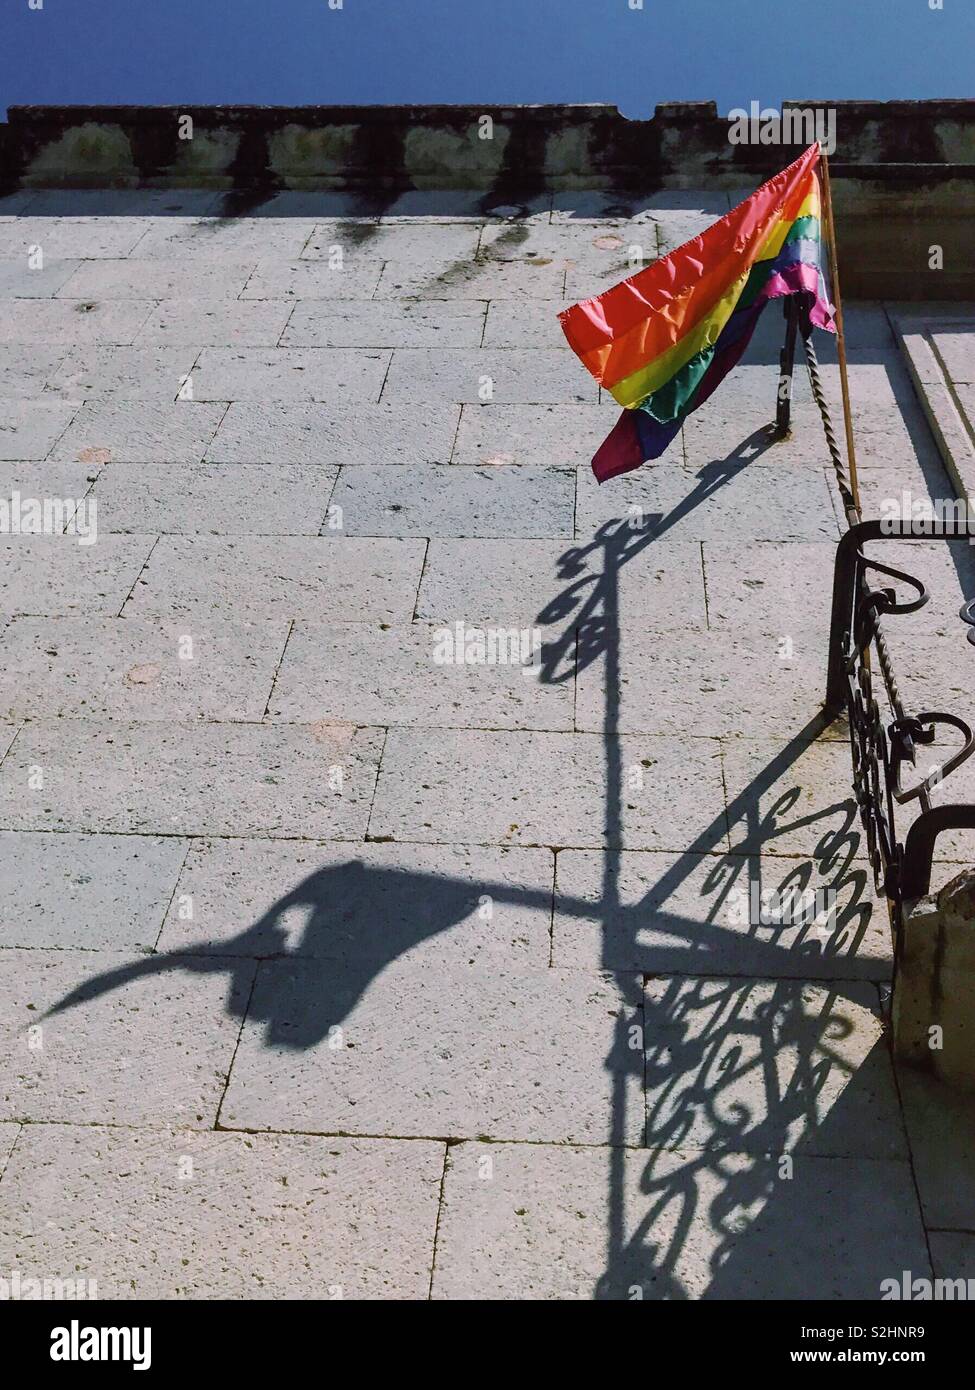 B-side de lado brillante. Brillante bandera LGBTQ desgarrado y su sombra sobre la pared de la casa. A menudo detrás de un aspecto brillante no vemos el sufrimiento escondido y traumas. Oaxaca, México. 16 de febrero de 2019 Foto de stock